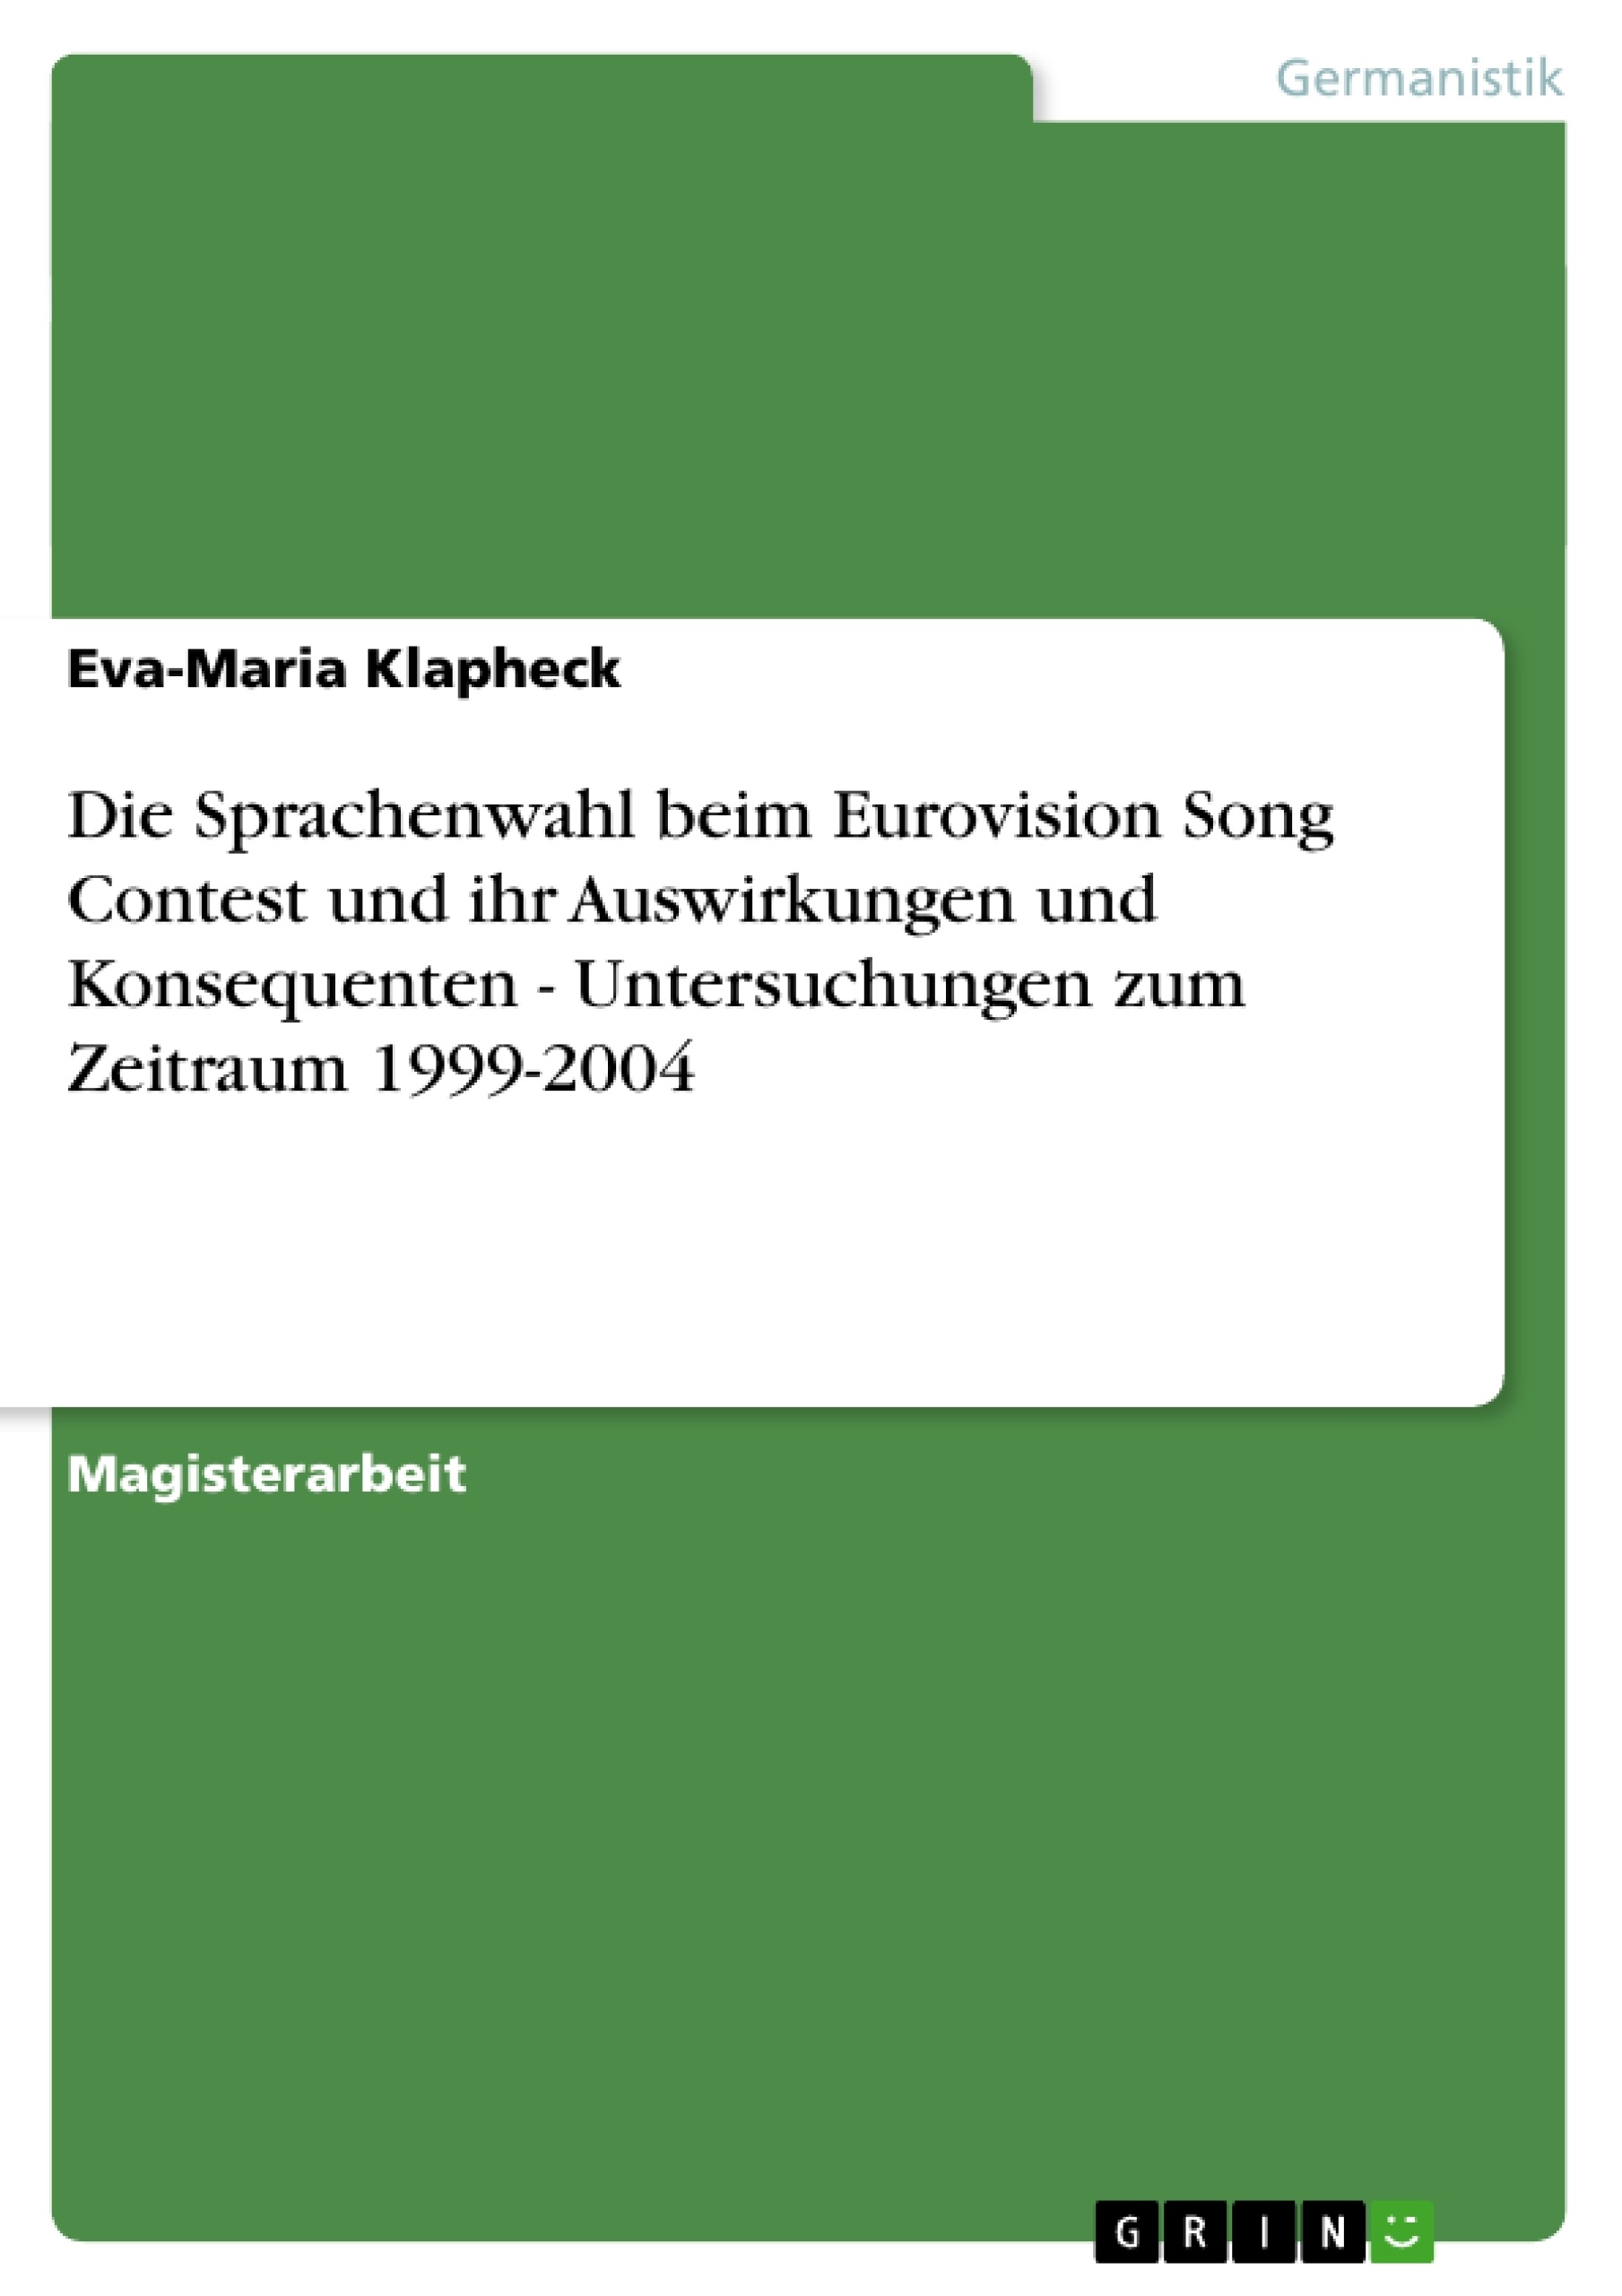 Titre: Die Sprachenwahl beim Eurovision Song Contest und ihr Auswirkungen und Konsequenten - Untersuchungen zum Zeitraum 1999-2004